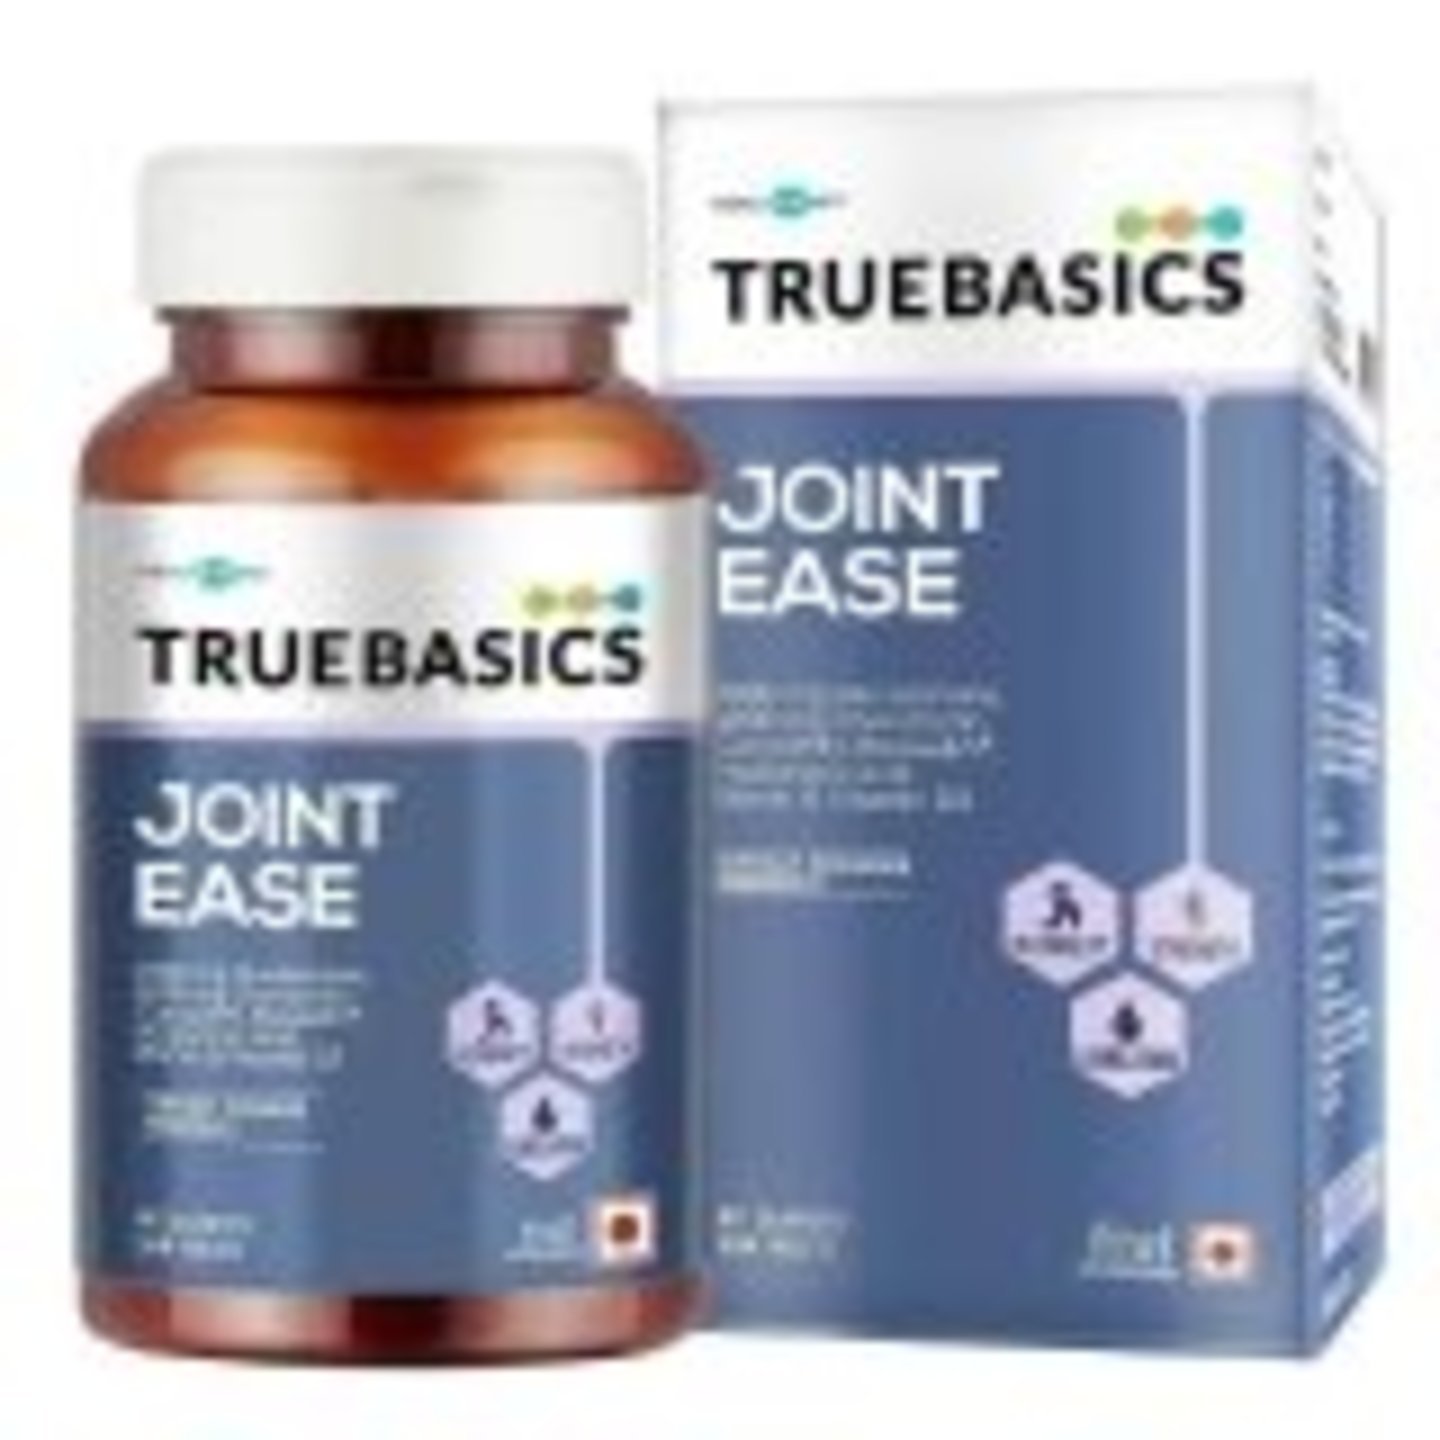 MastMart TrueBasics Joint Ease, 90 tablets